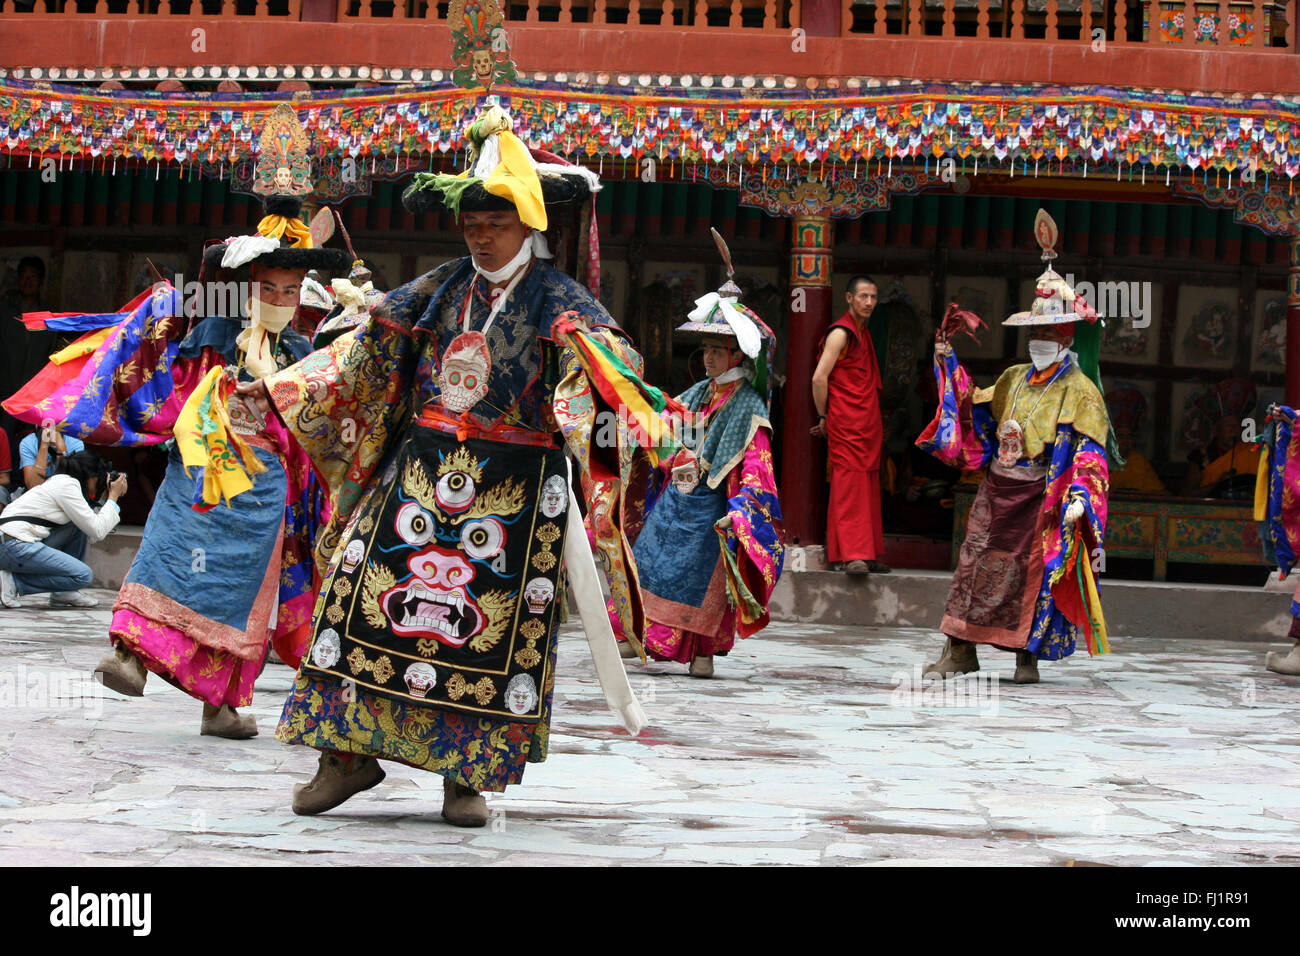 Celebrations at Hemis monastery gompa near Leh in Ladakh, India Stock Photo